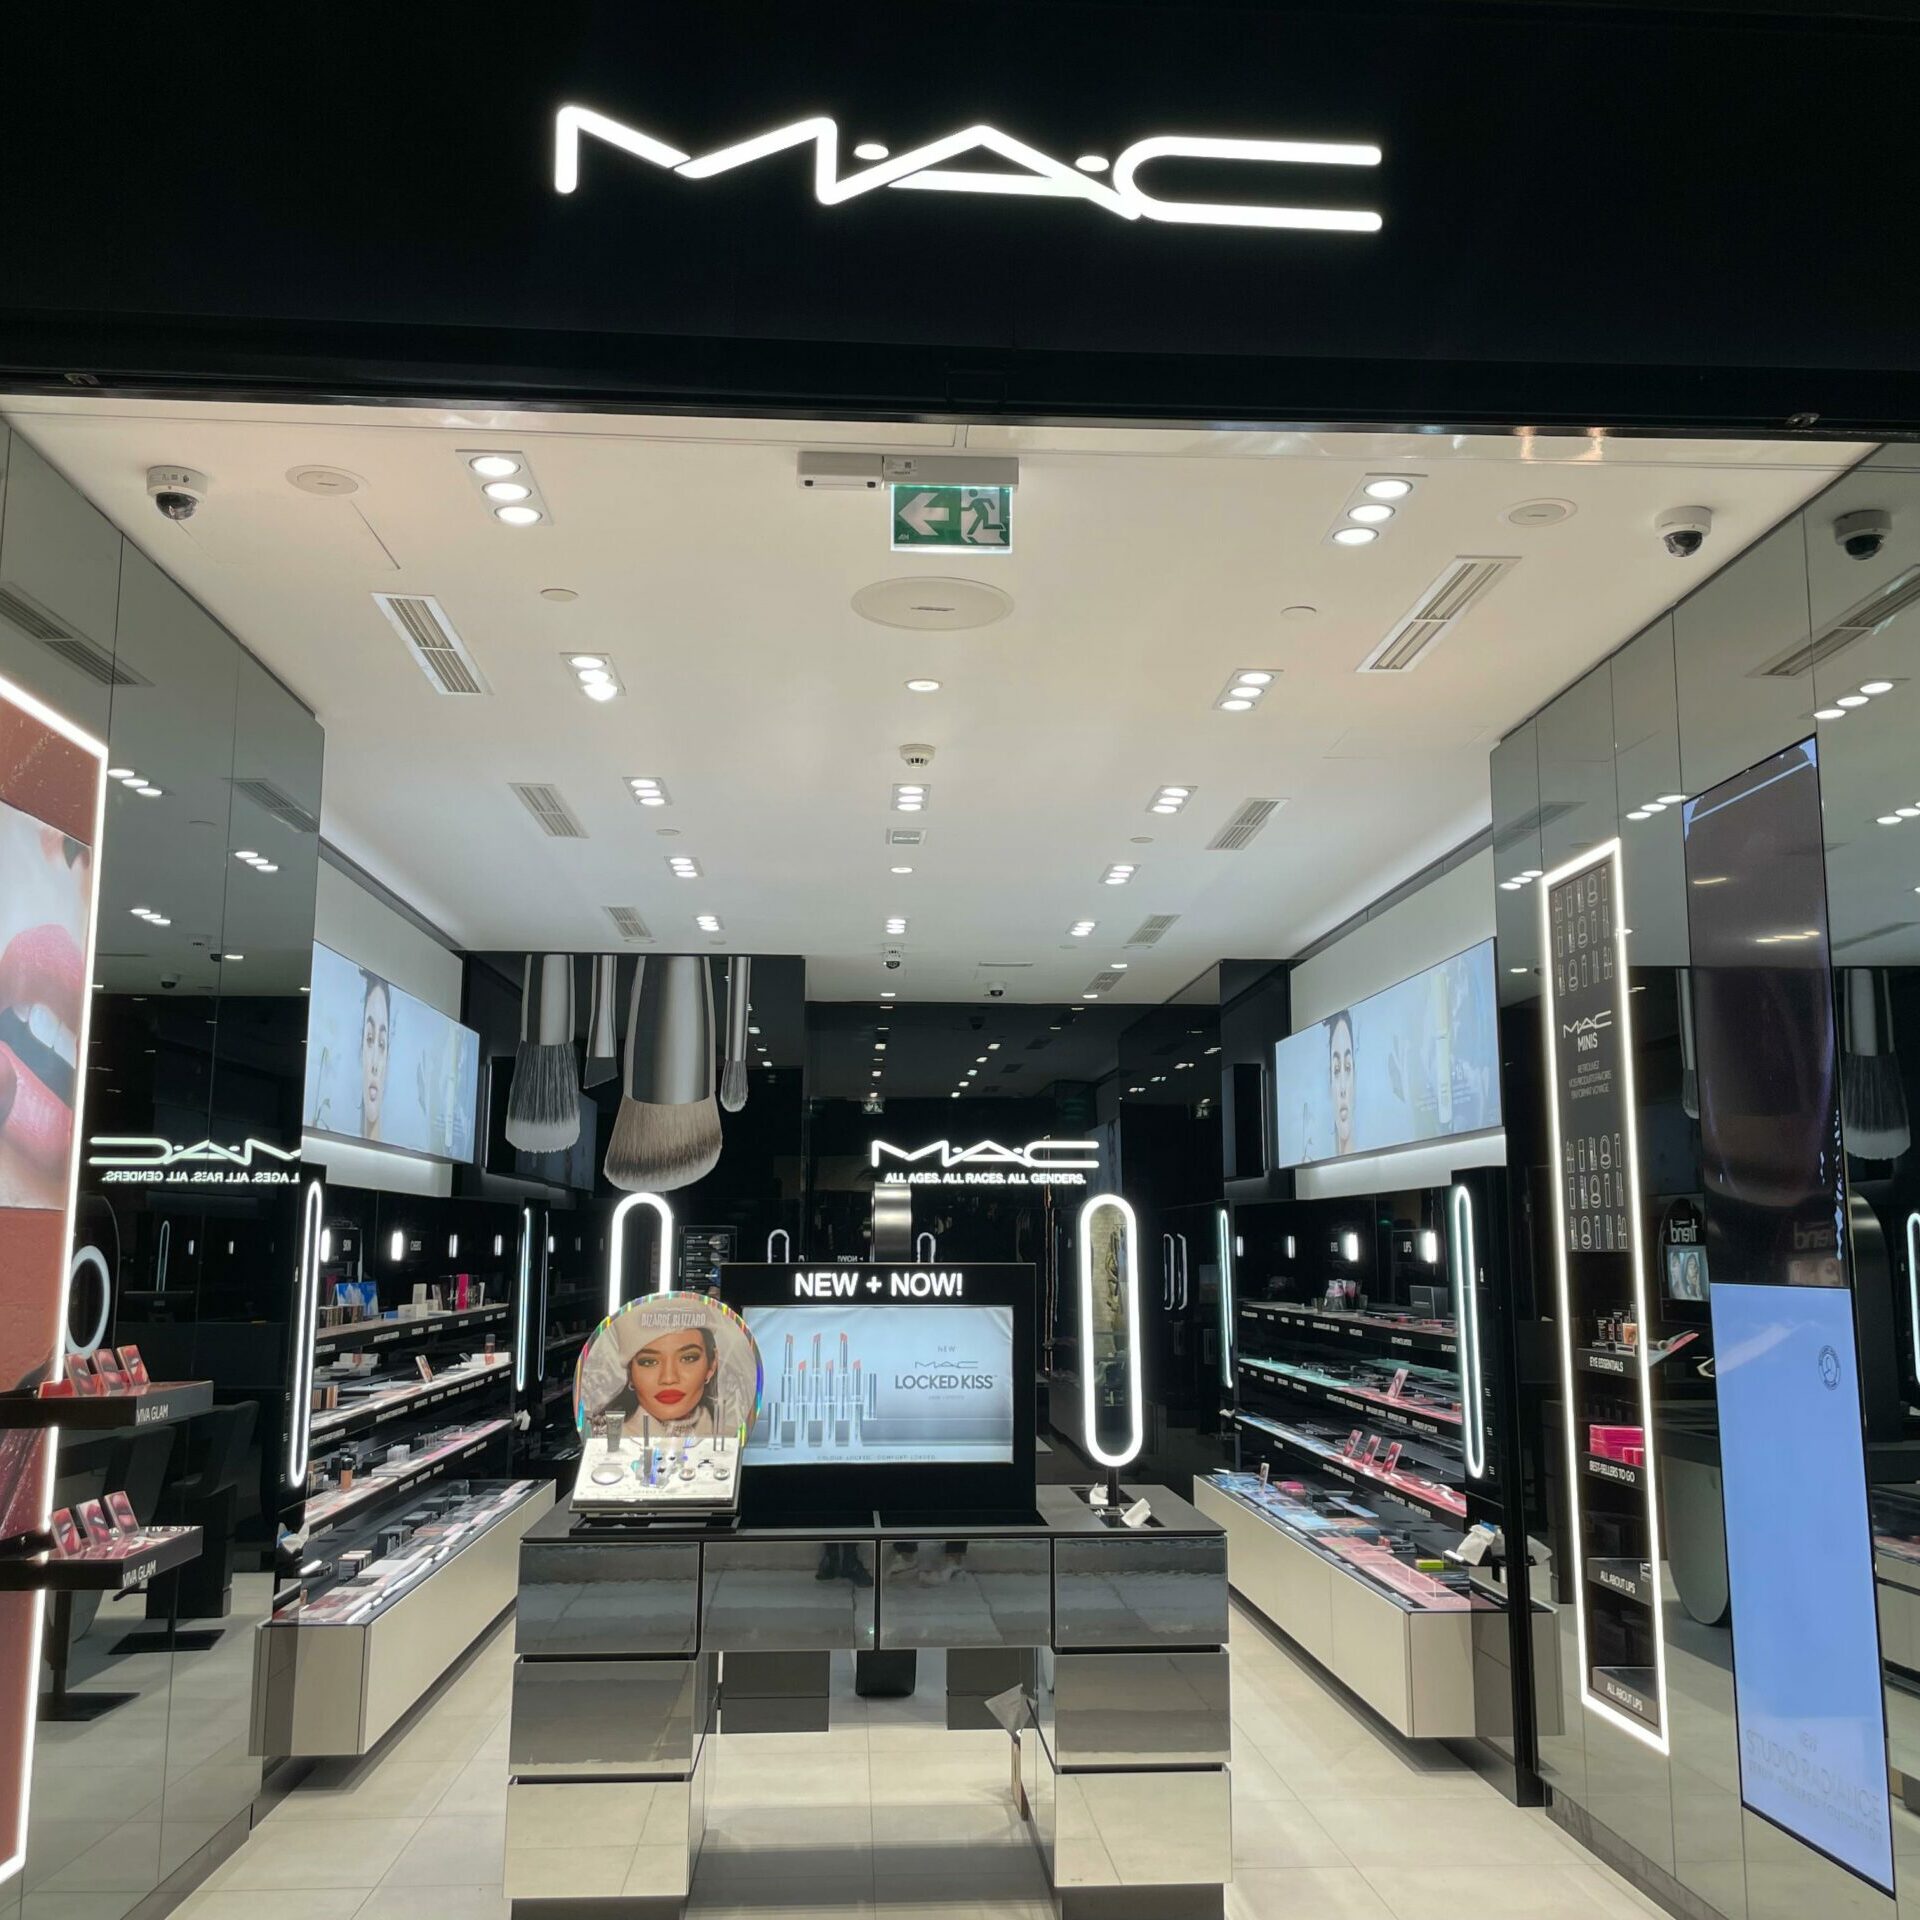 M.A.C Cosmetics